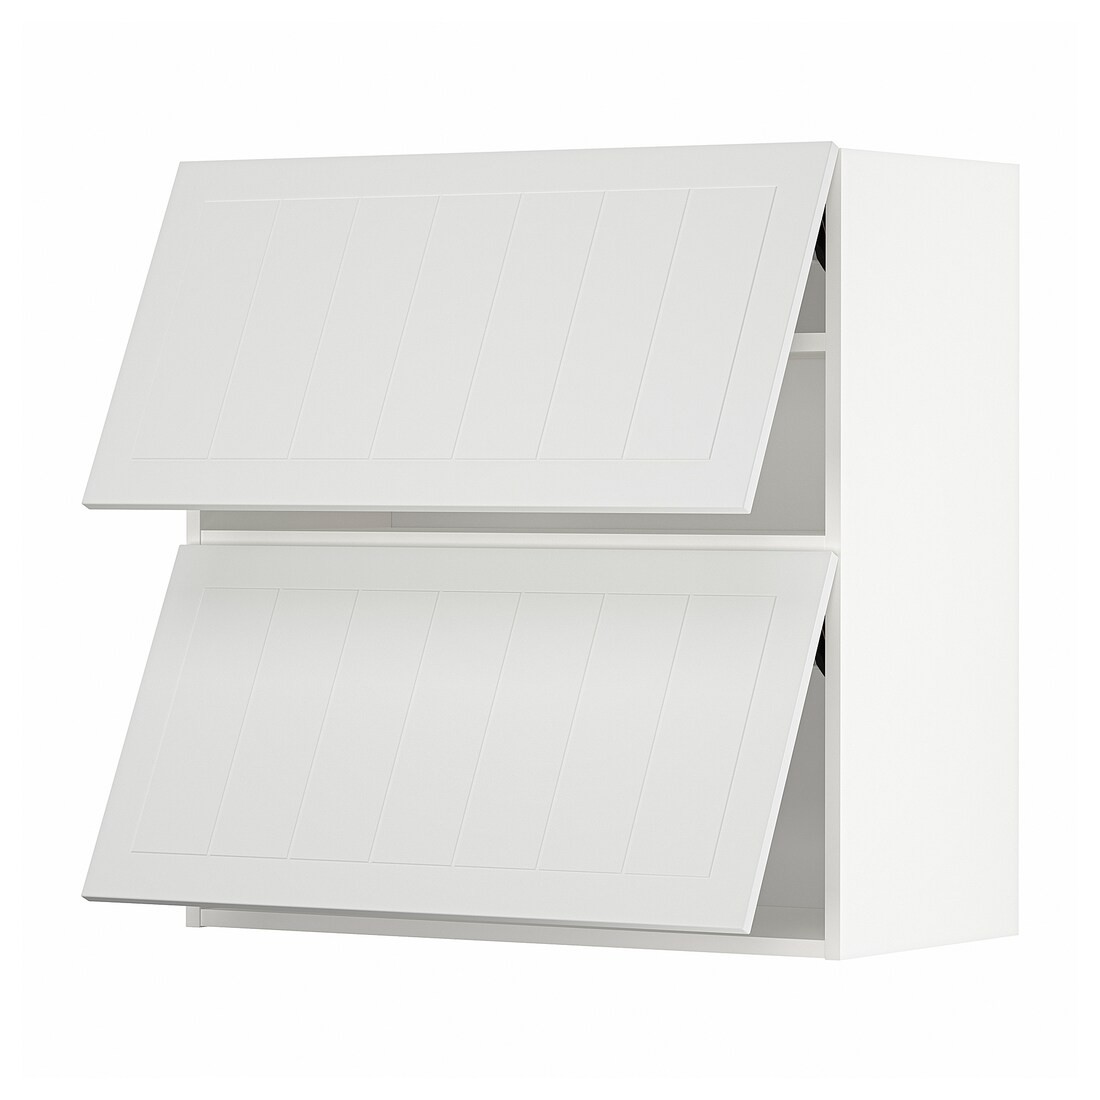 IKEA METOD МЕТОД Навісна горизонтальна шафа / 2 дверей, білий / Stensund білий, 80x80 см 69409256 694.092.56